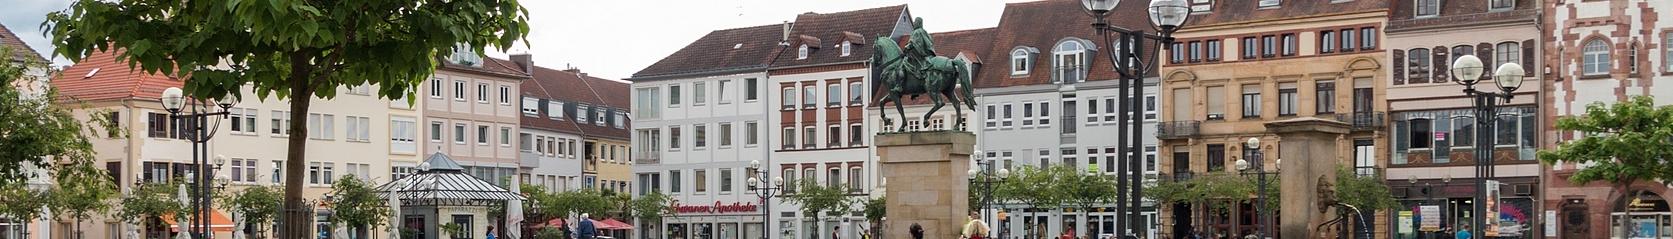 Banner image for Landau in der Pfalz on GigsGuide